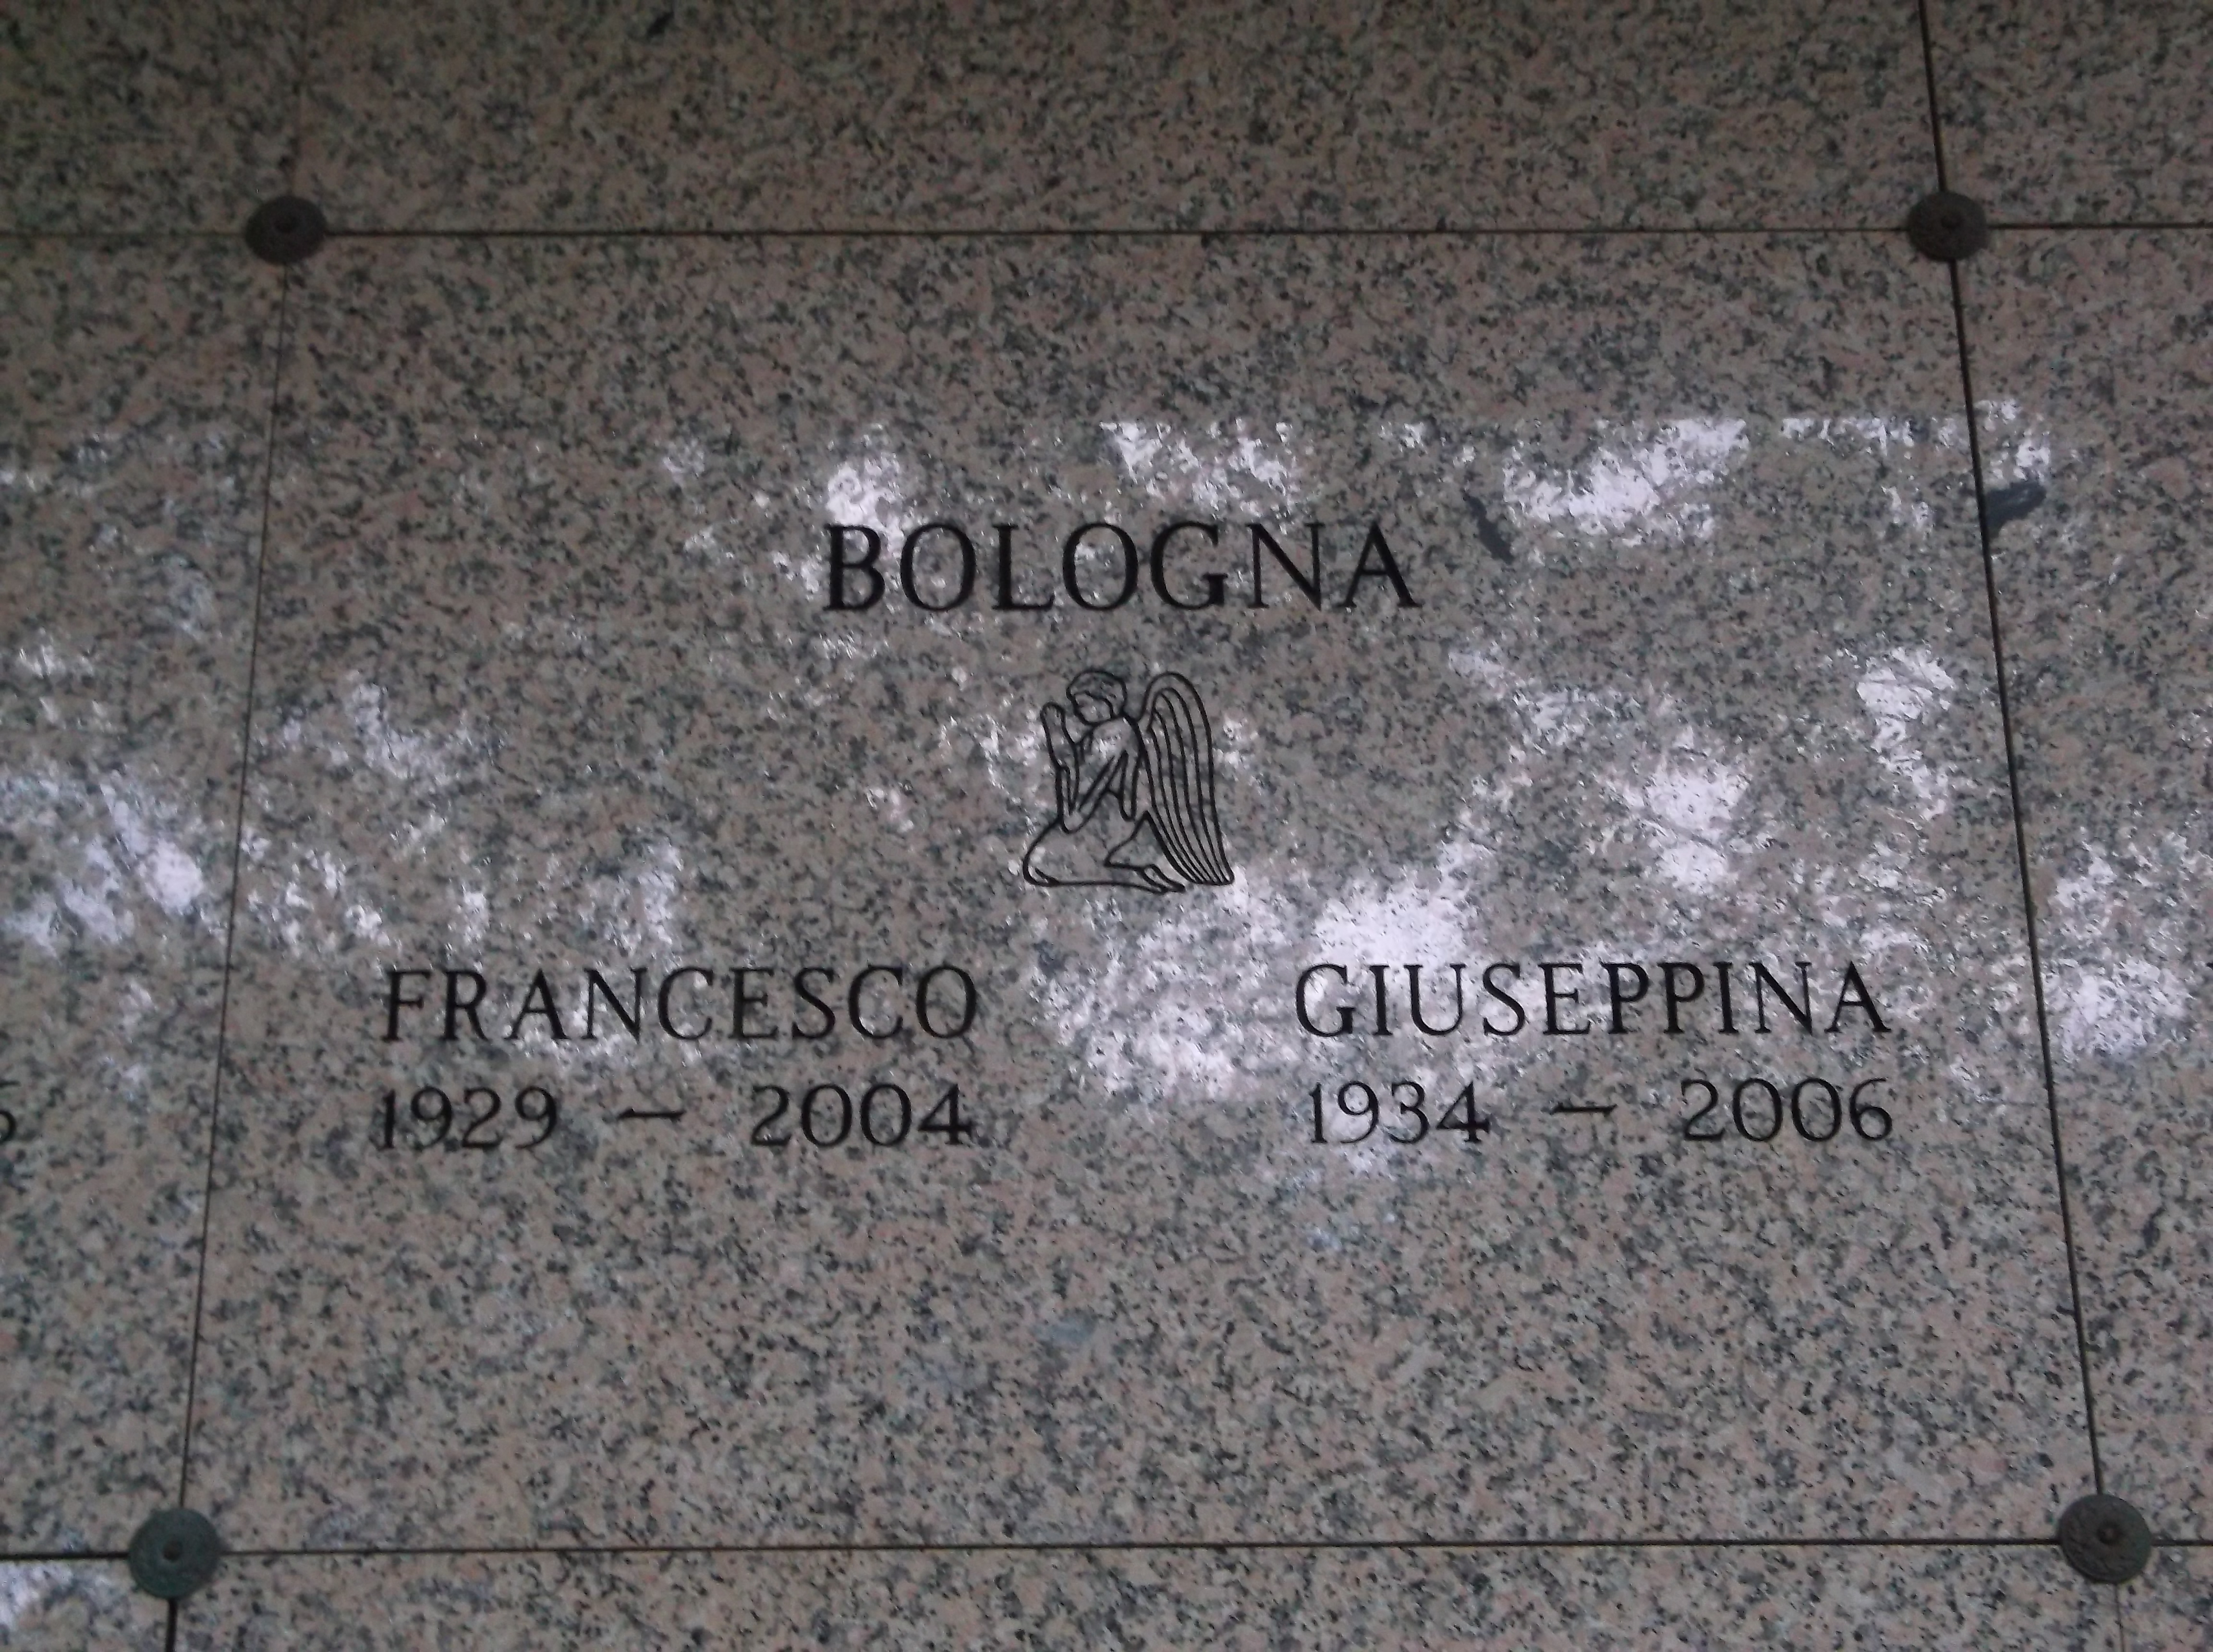 Francesco Bologna